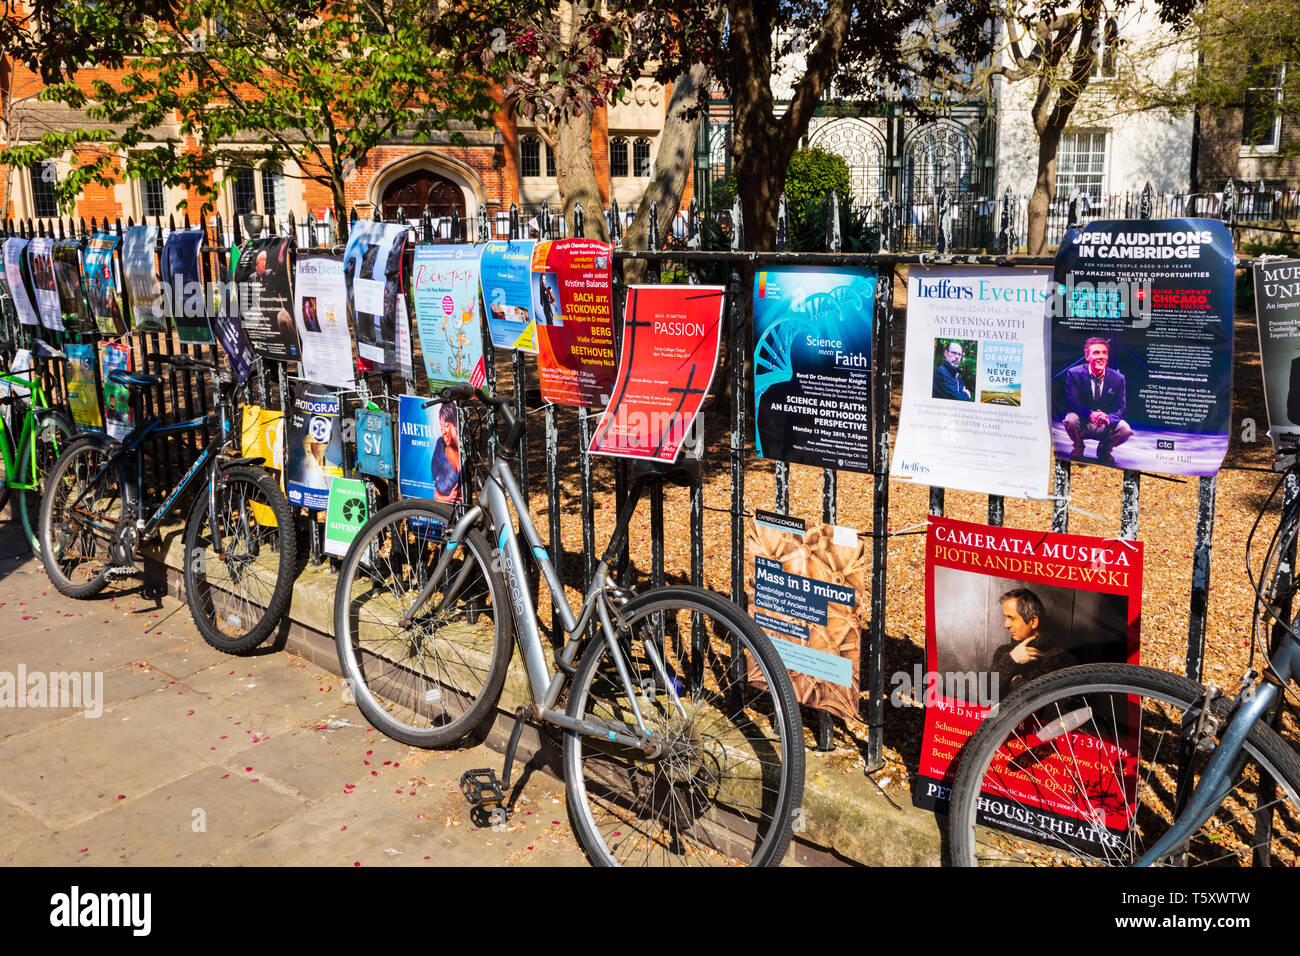 Las bicicletas y los carteles en las rejas del jardín de todos los santos, el arte y la feria de artesanía, Trinity Street, ciudad universitaria de Cambridge, Cambridgeshire, Engla Foto de stock